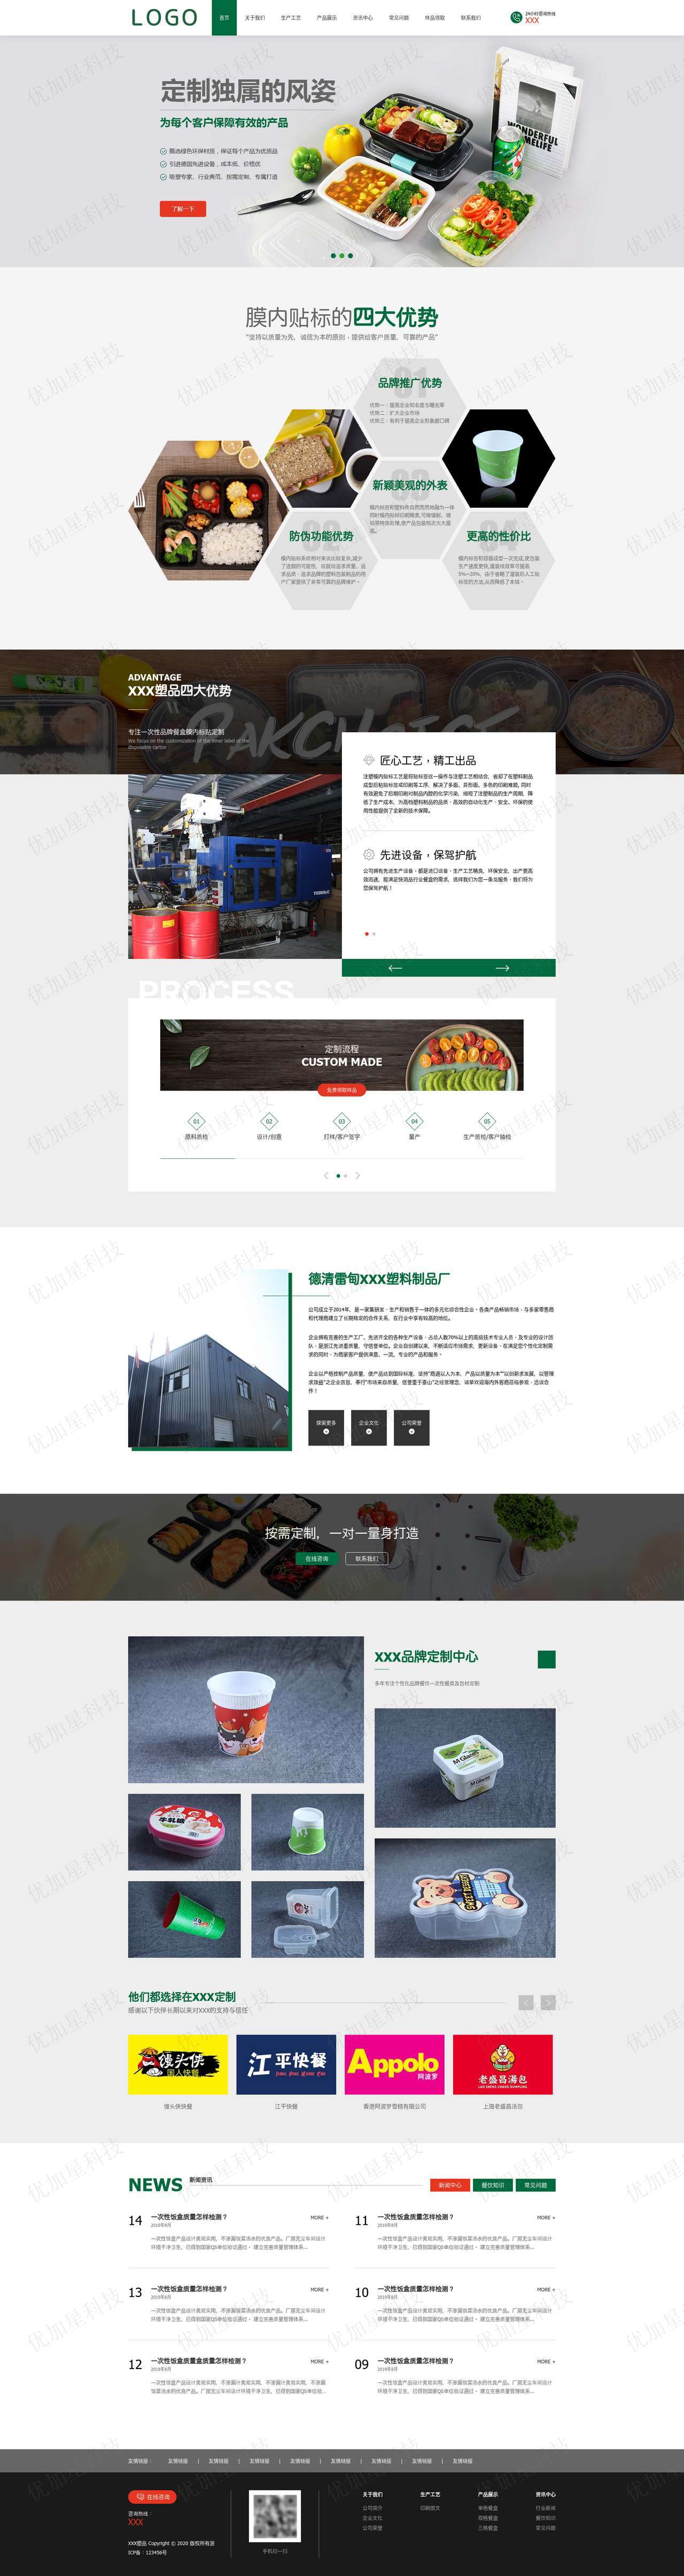 绿色环保样品包装设计公司网站模板_优加星网络科技